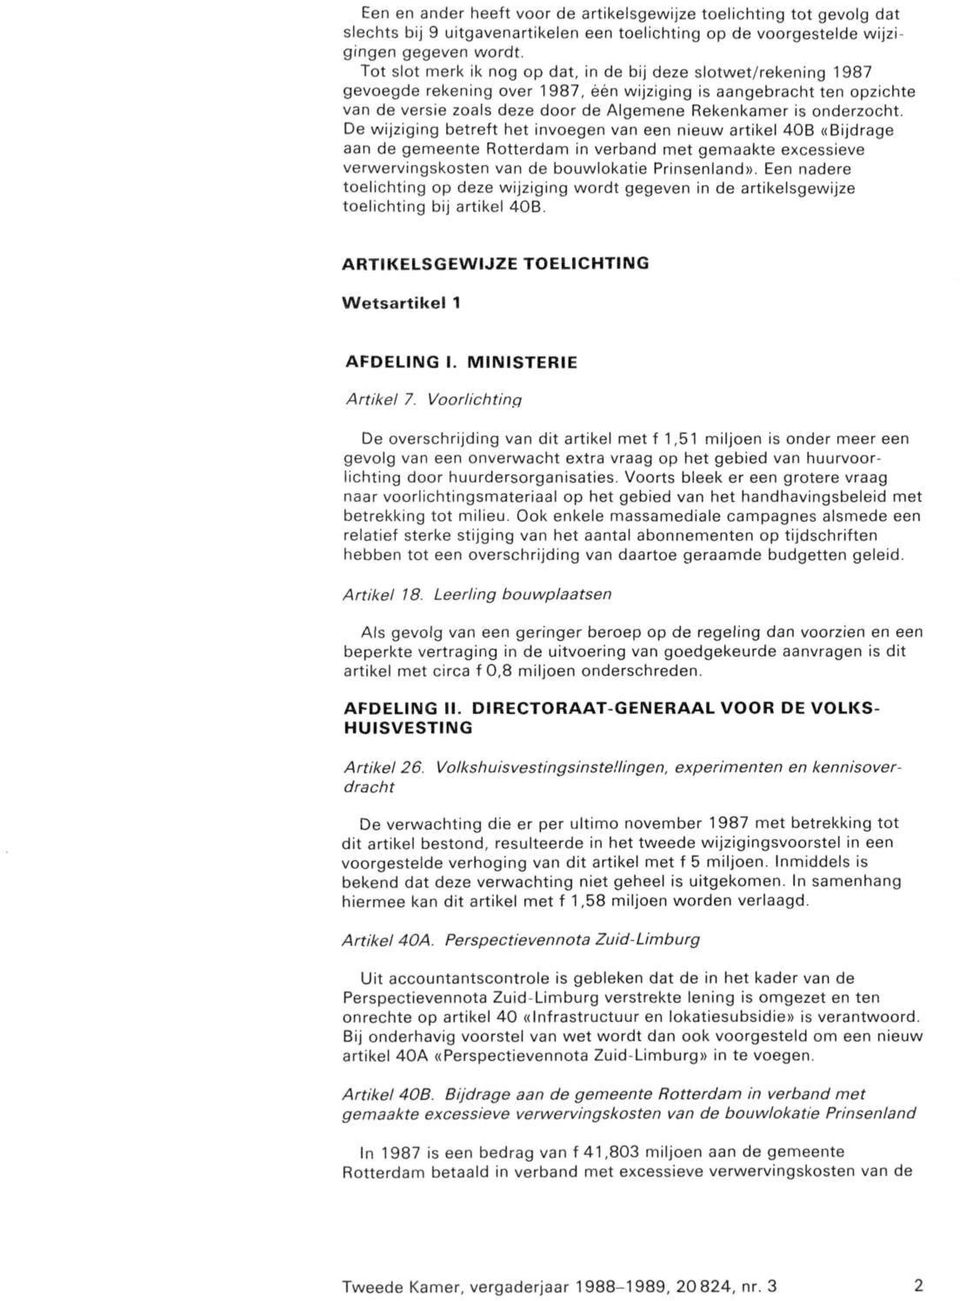 onderzocht. De wijziging betreft het invoegen van een nieuw artikel 40B «Bijdrage aan de gemeente Rotterdam in verband met gemaakte excessieve verwervingskosten van de bouwlokatie Prinsenland».